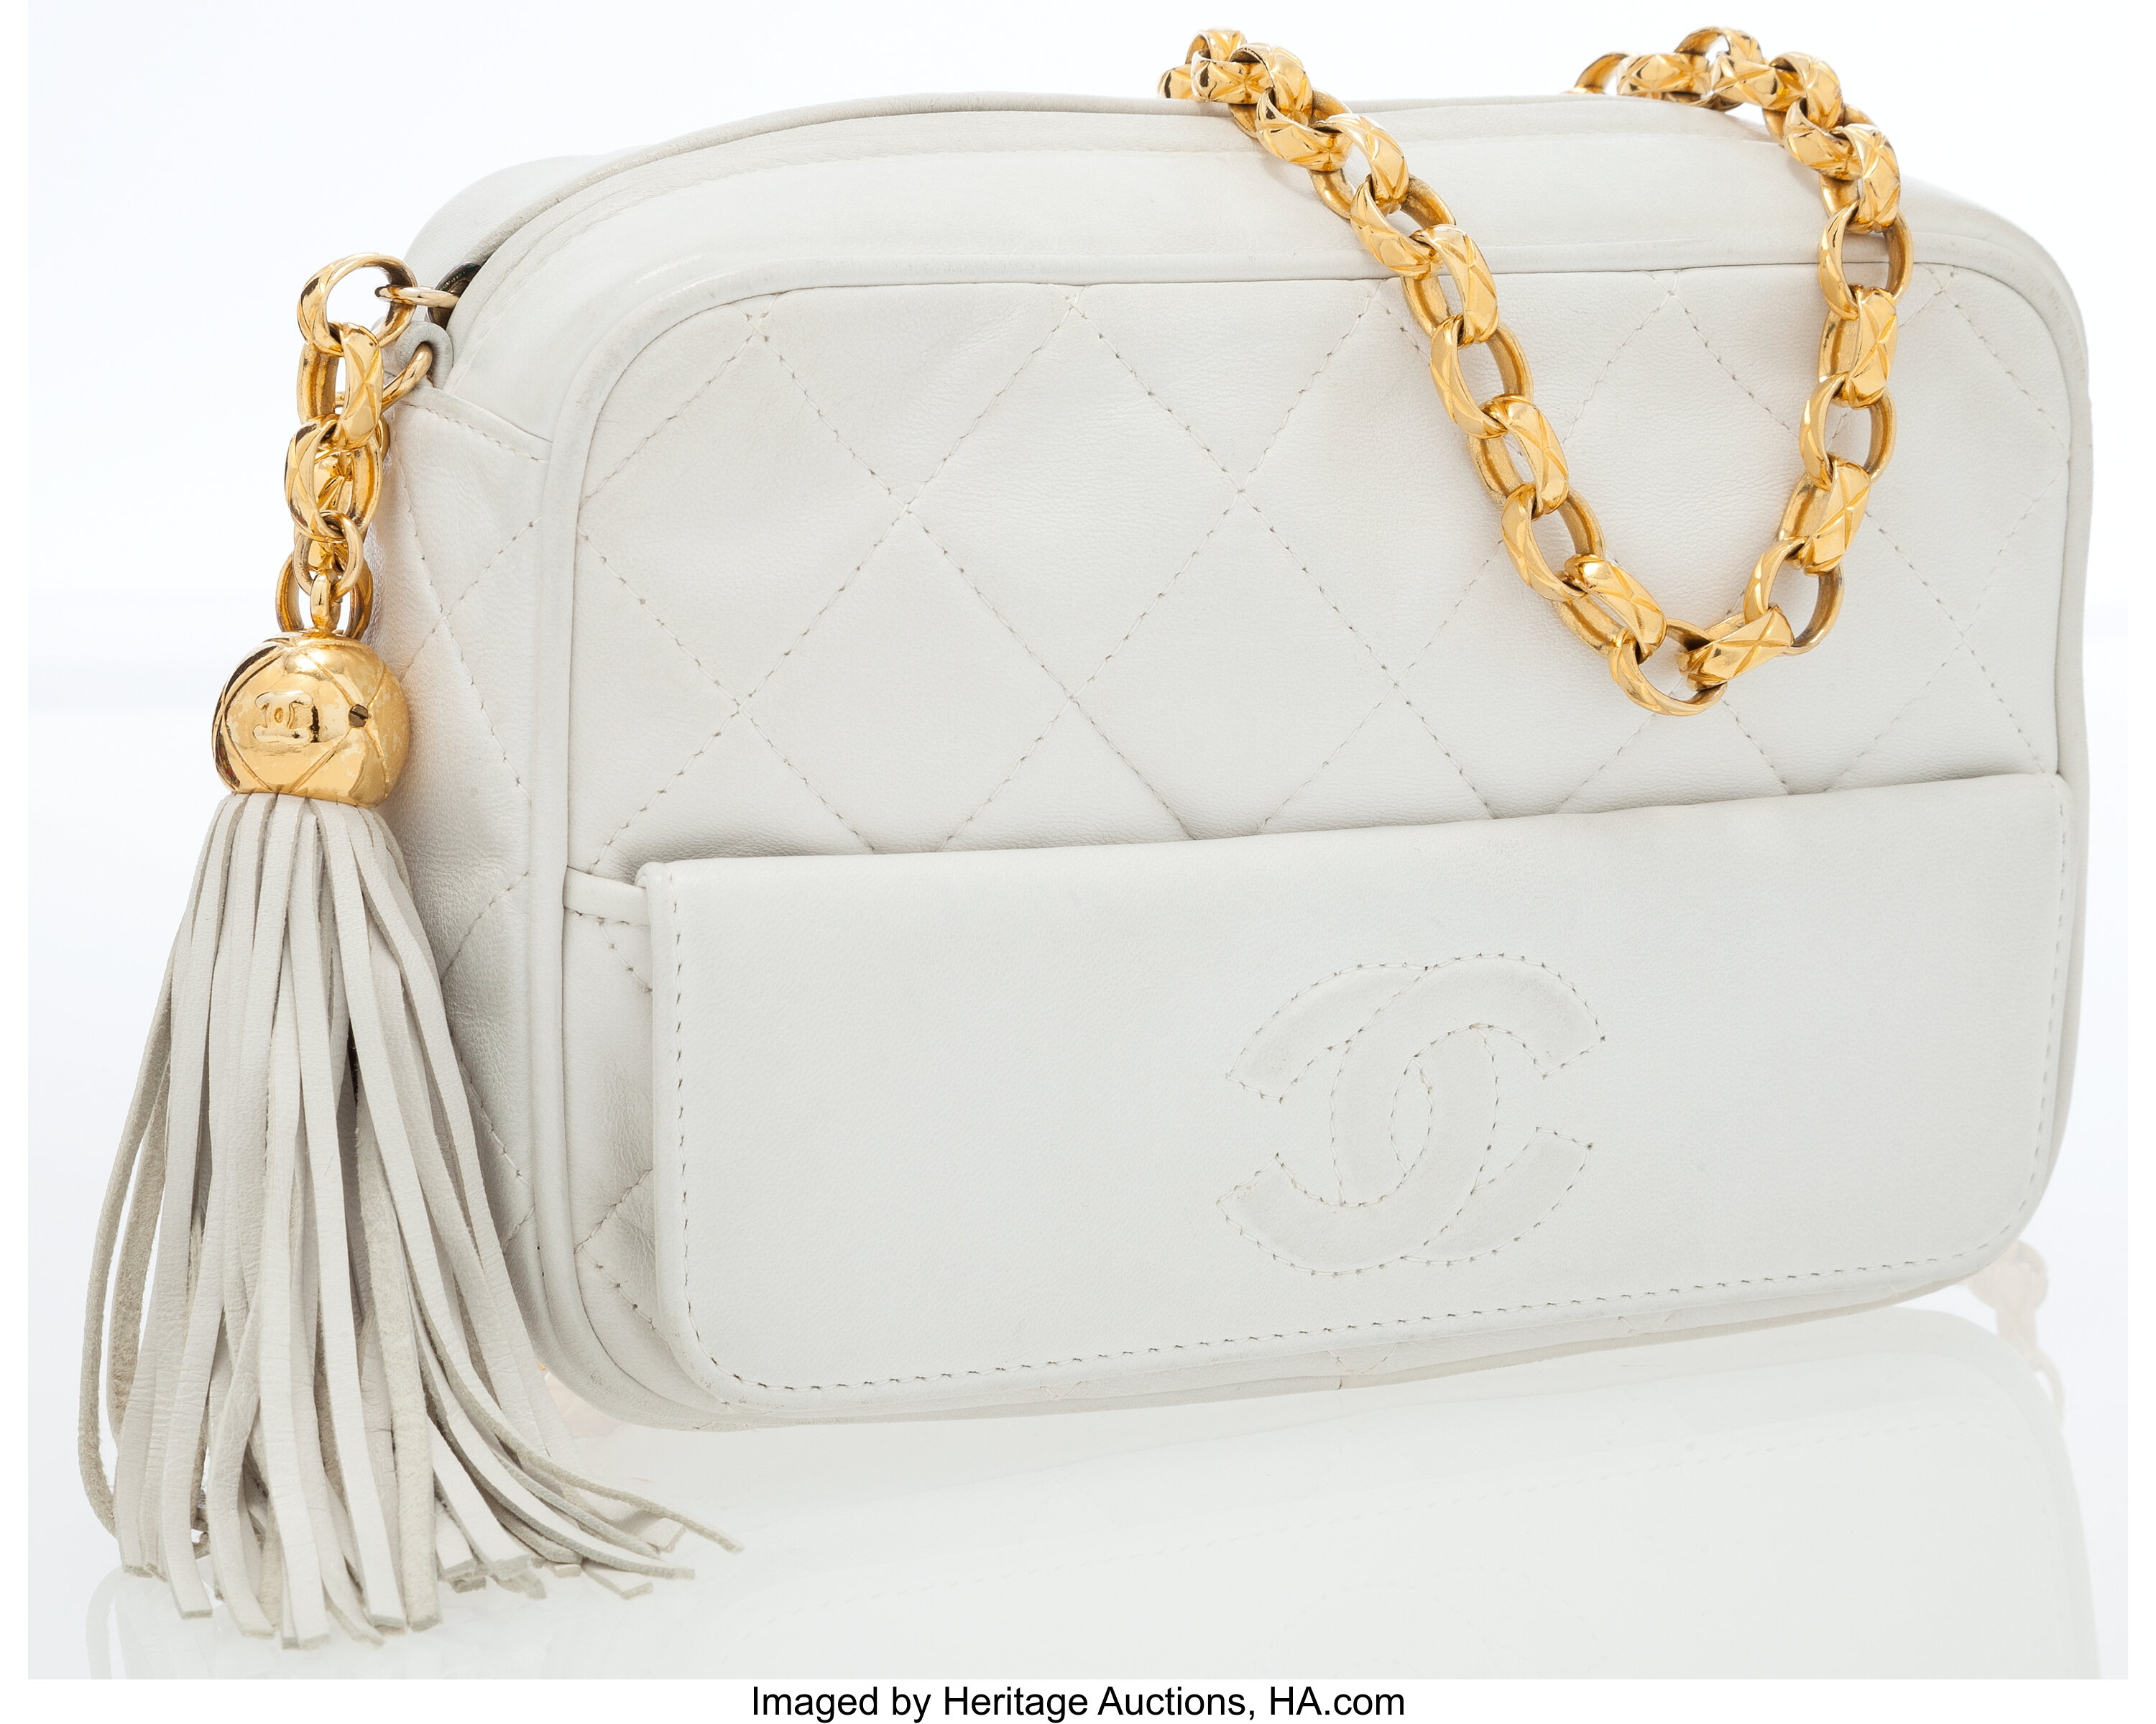 Vintage Chanel Tassel Bag - 41 For Sale on 1stDibs